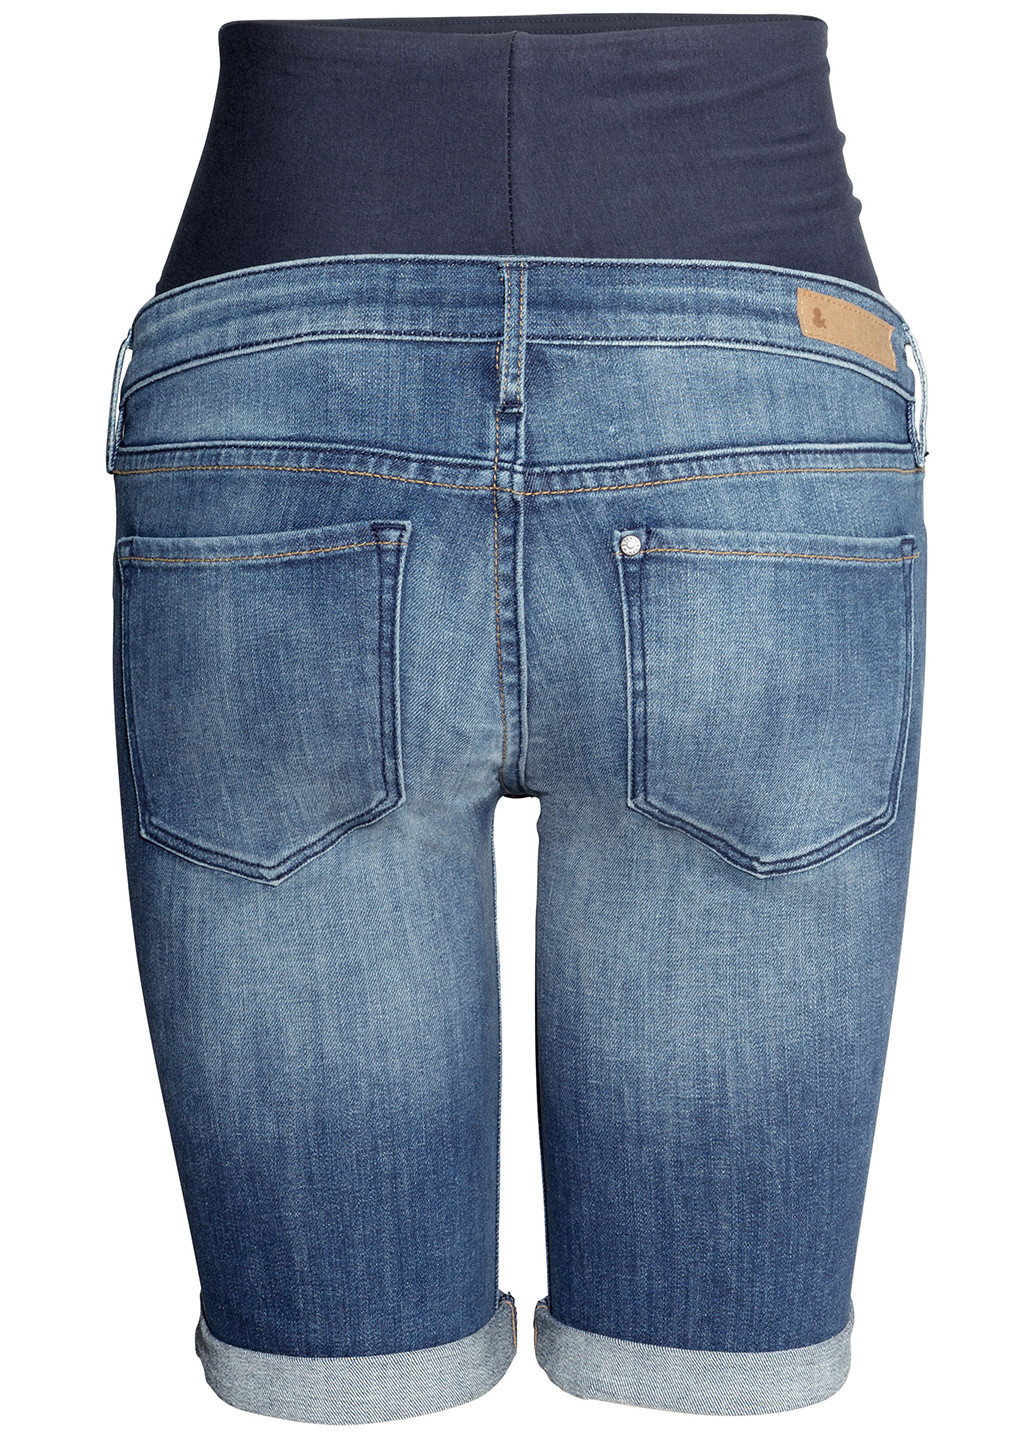 Шорты для беременных H&M чиносы однотонные синие джинсовые